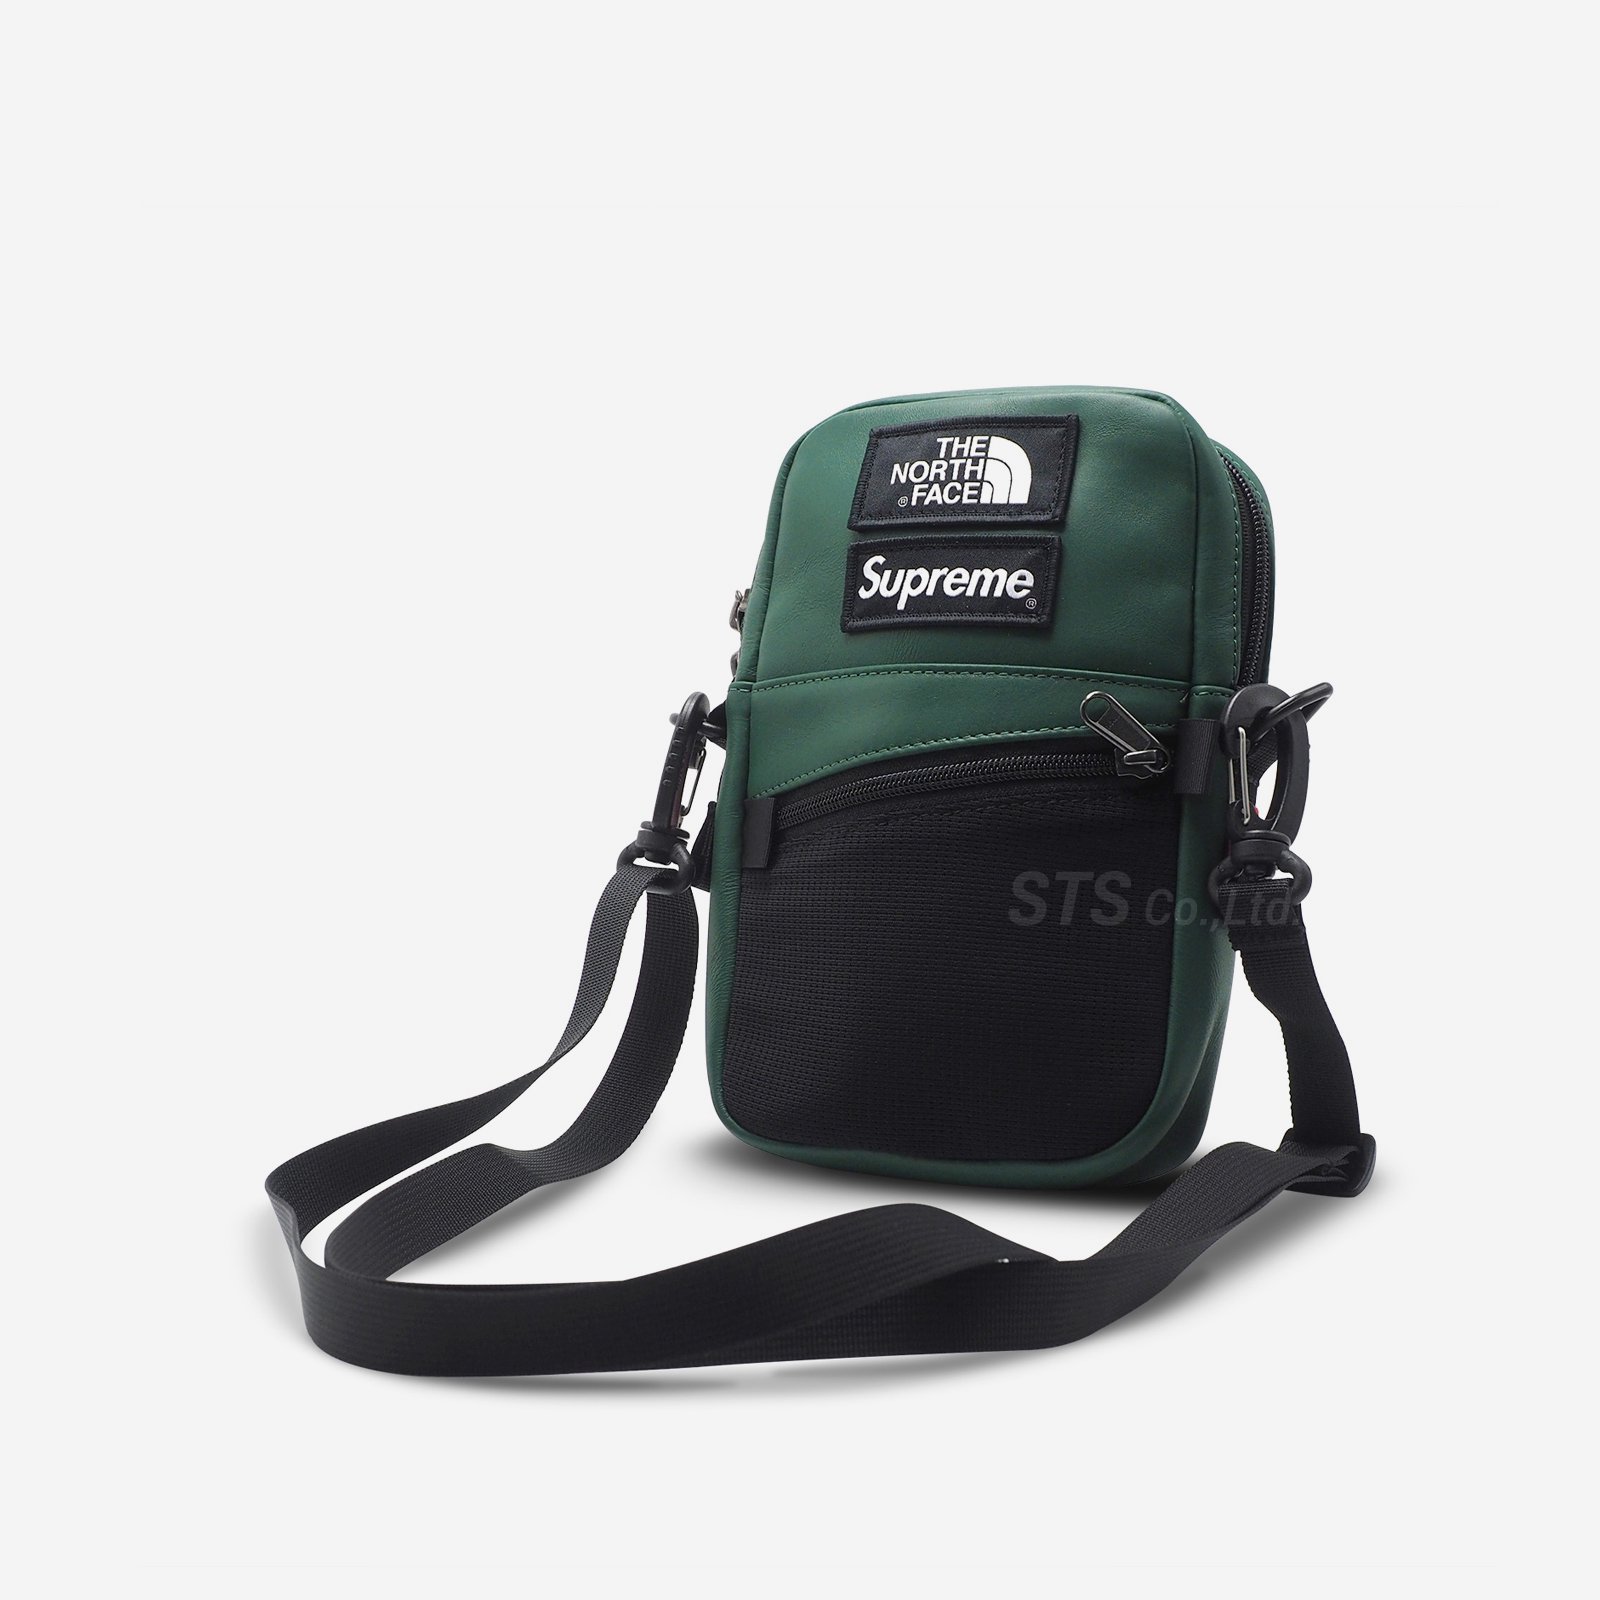 Supreme/The North Face Leather Shoulder Bag - UG.SHAFT